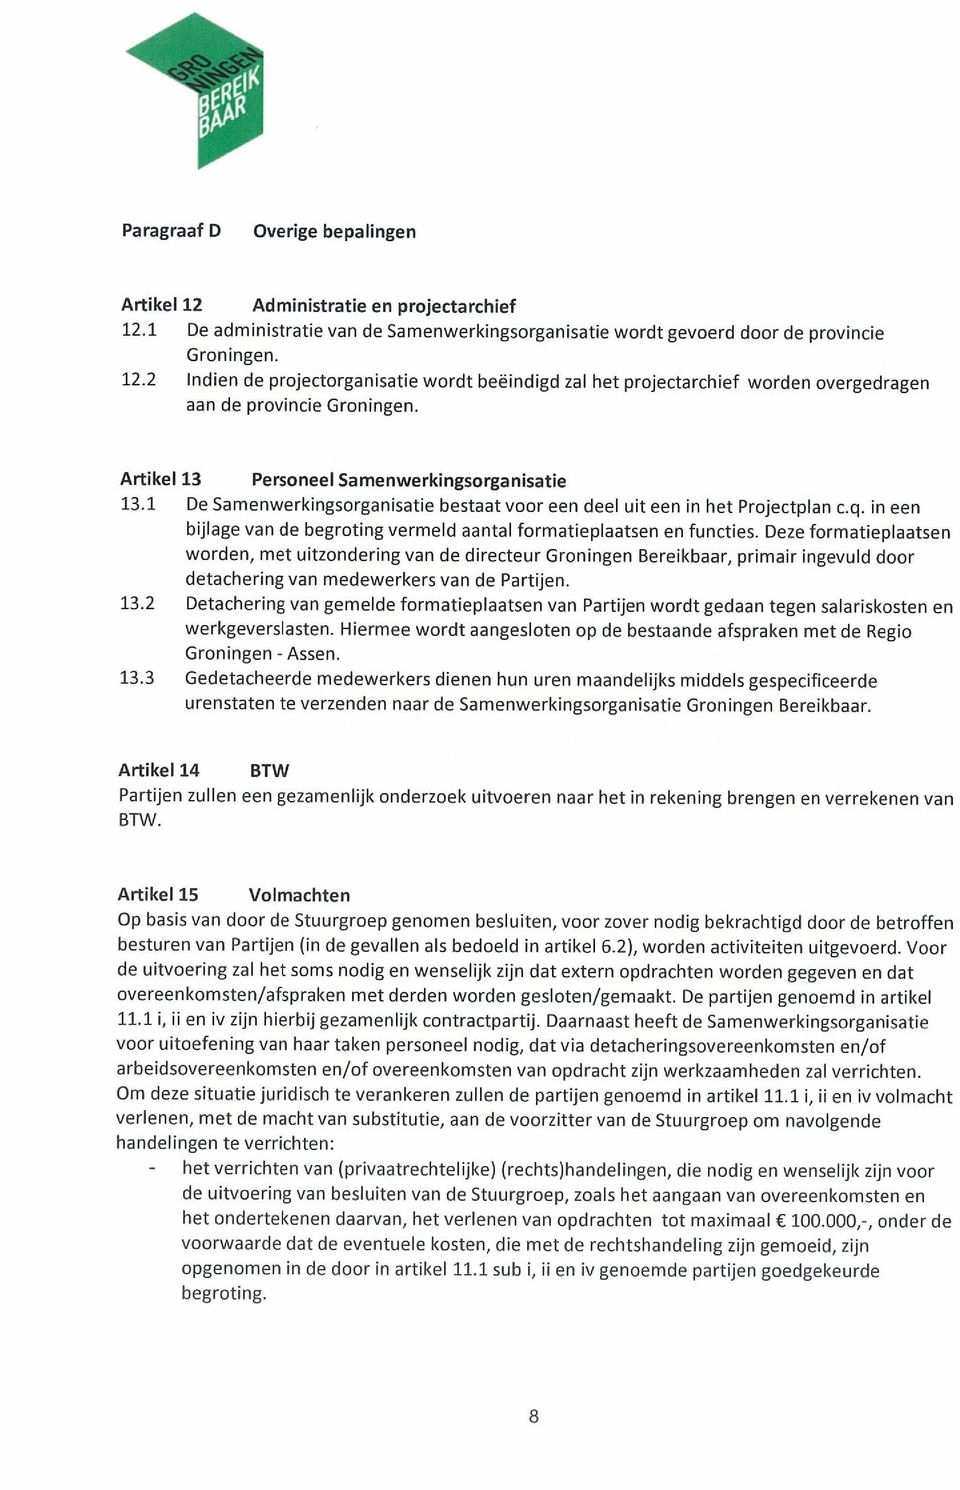 Deze formatieplaatsen worden, met uitzondering van de directeur Groningen Bereikbaar, primair ingevuld door detachering van medewerkers van de Partijen. 13.